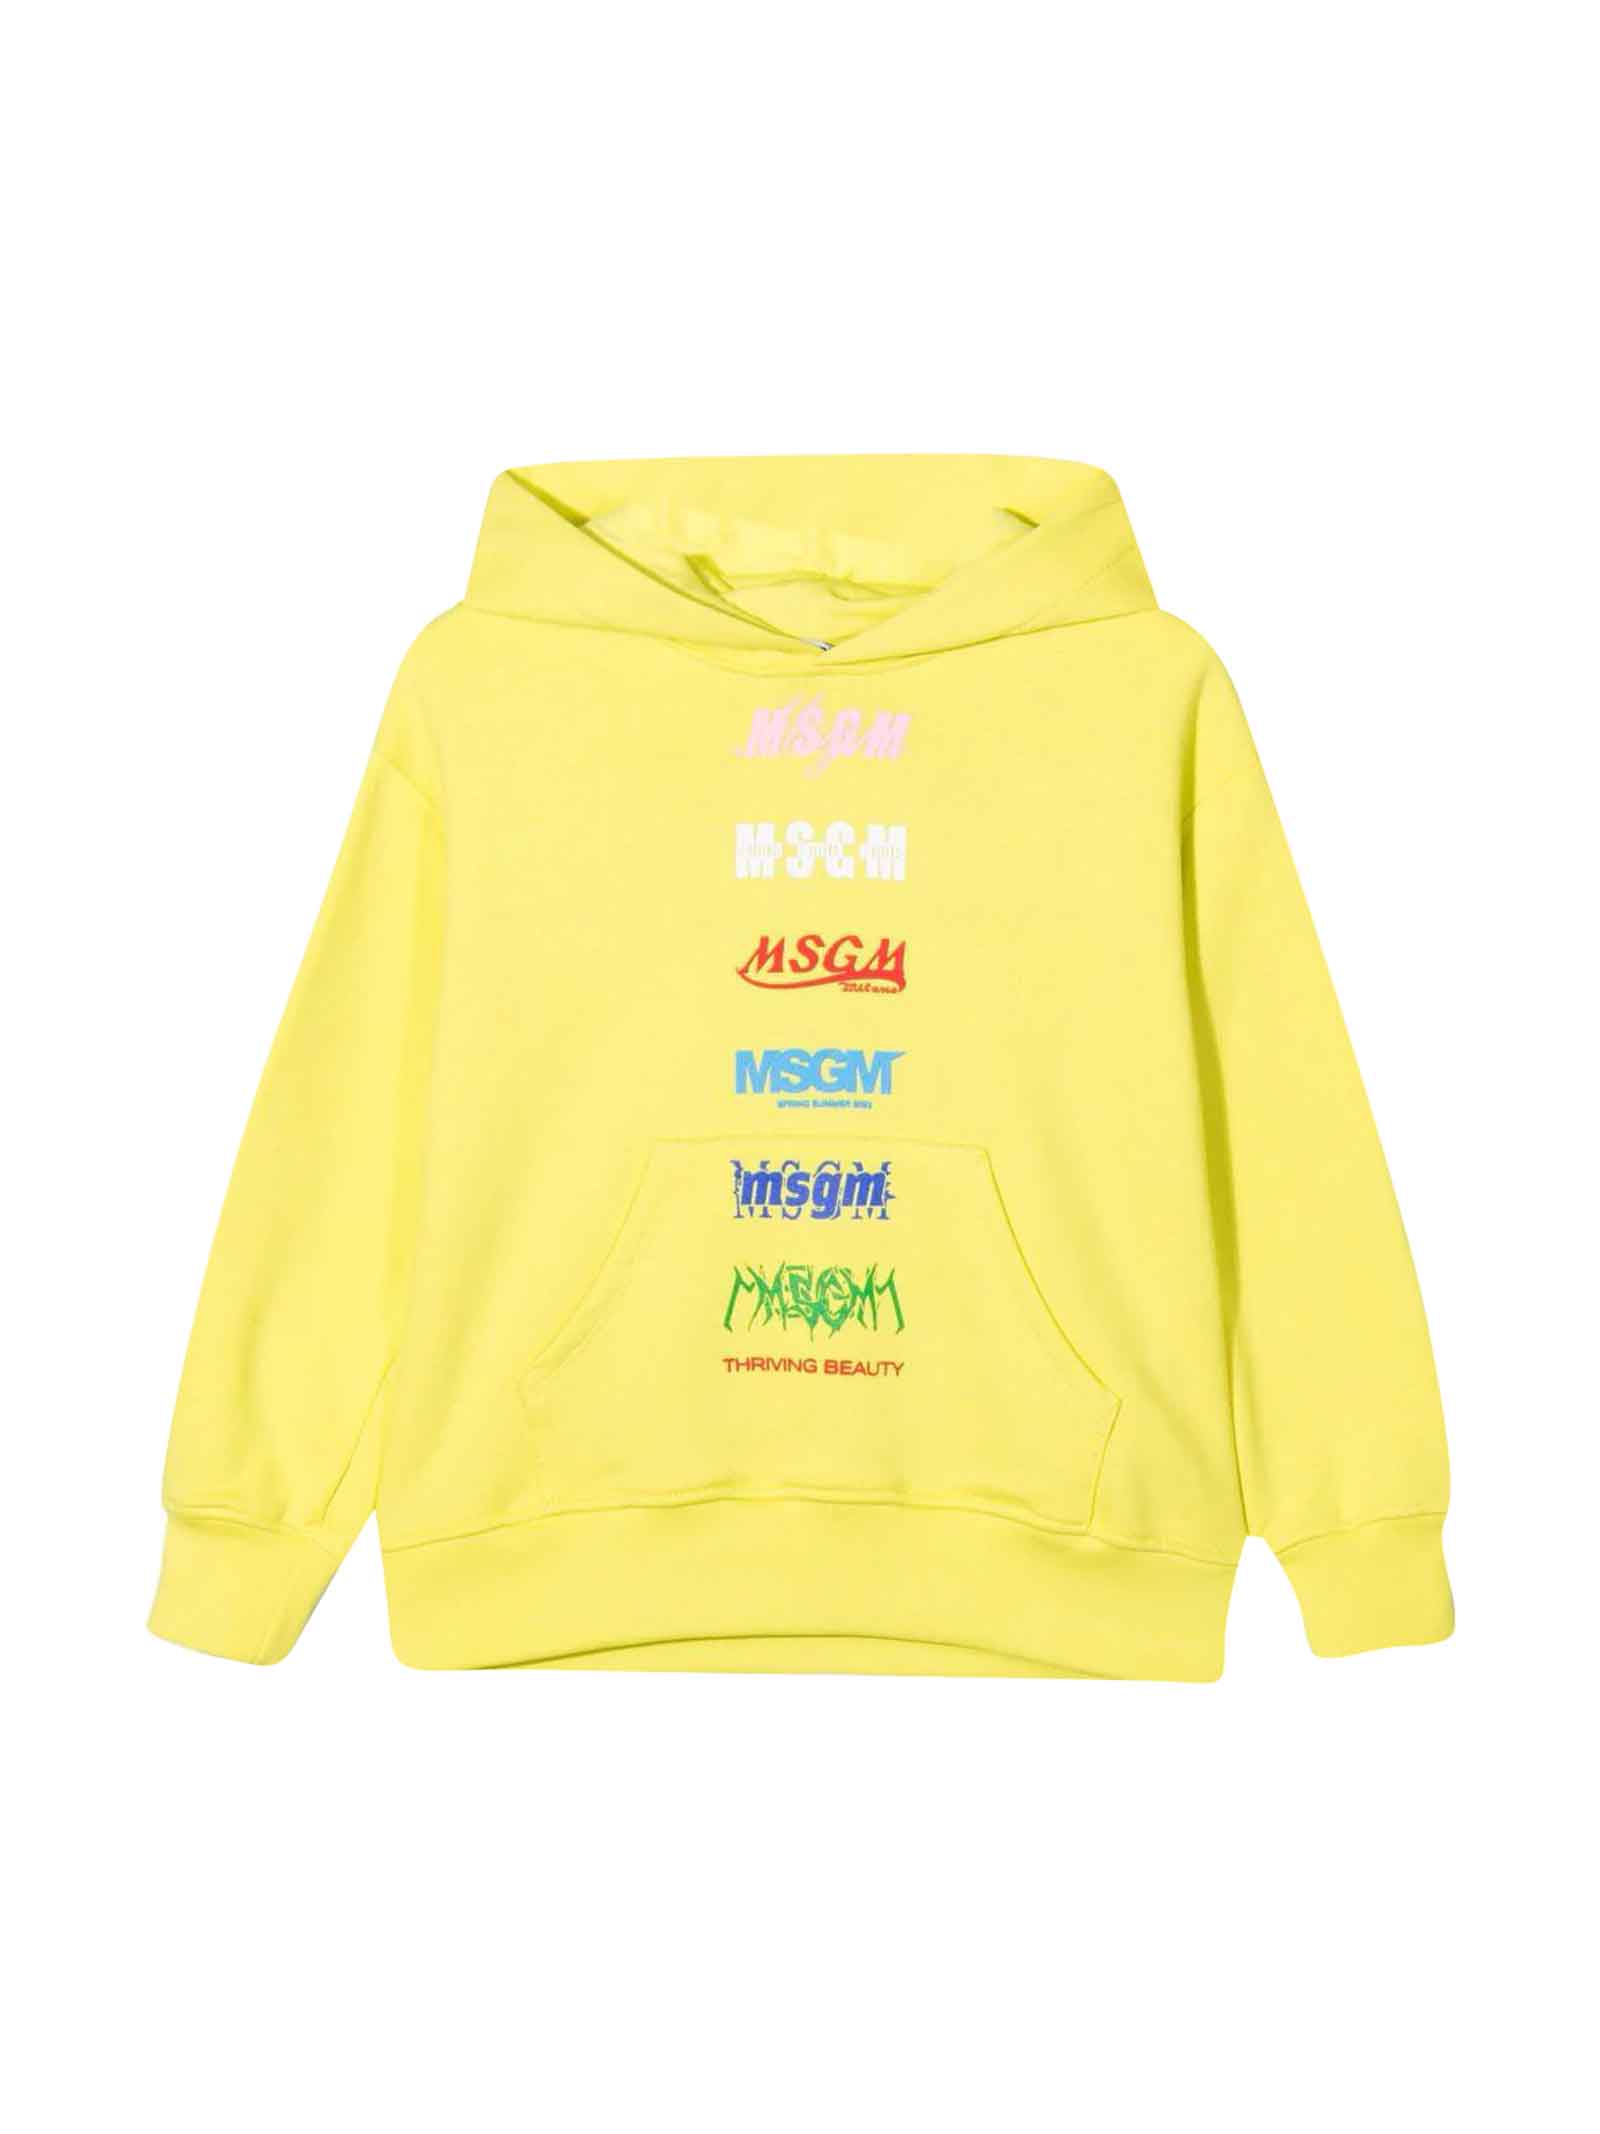 MSGM Yellow Sweatshirt Unisex